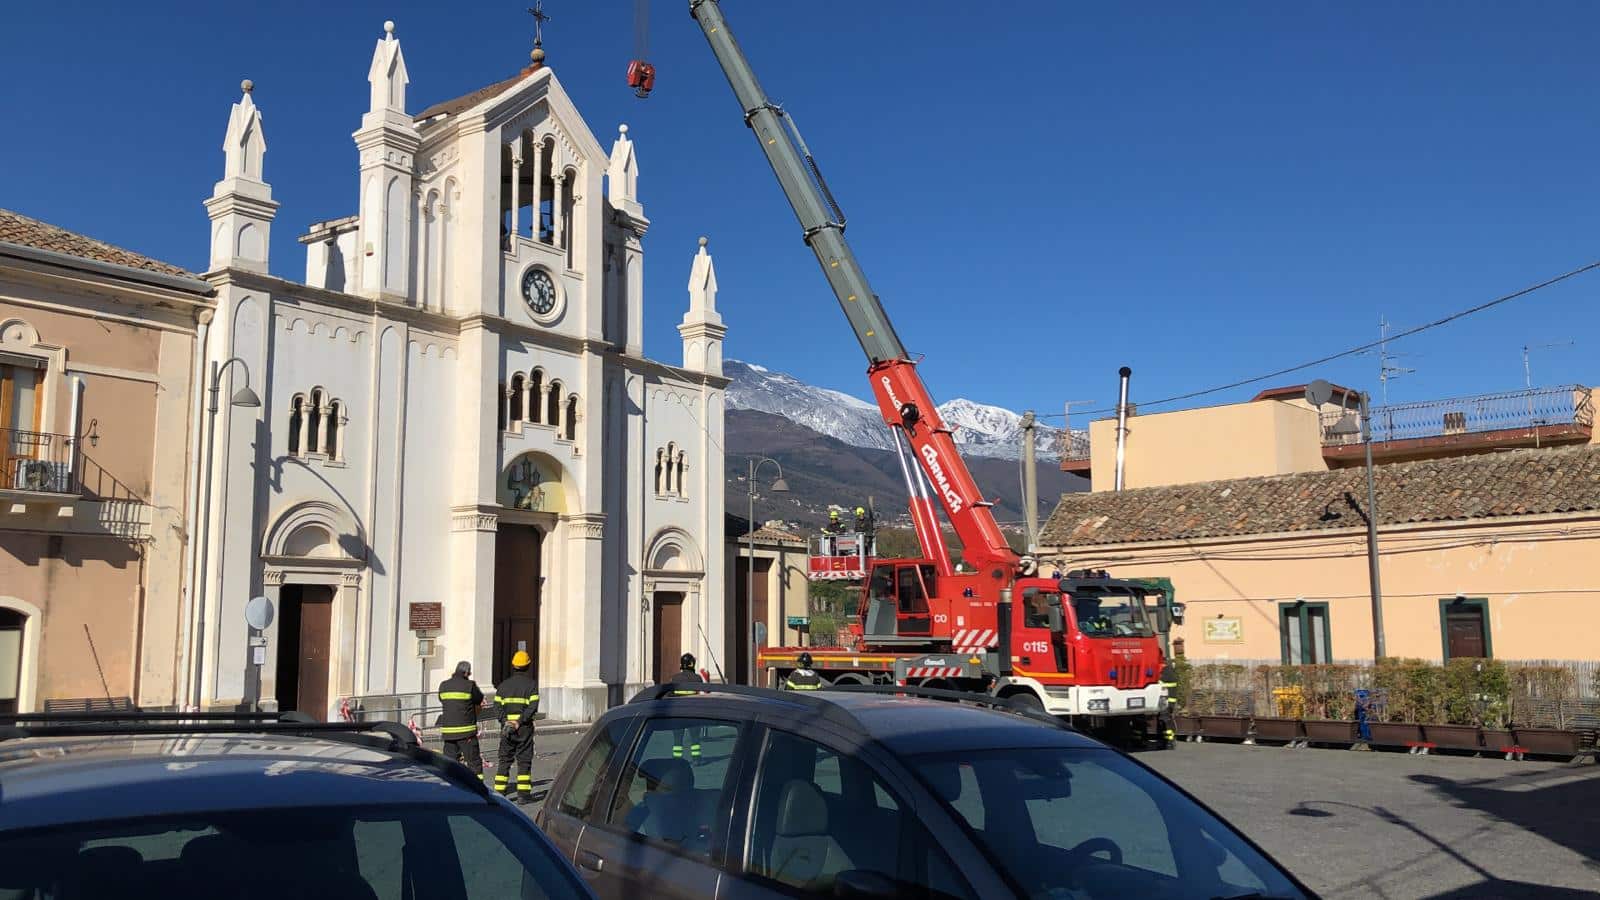 Sisma dicembre 2018, via ai lavori alla chiesa di Cosentini: “Ferite profonde possono essere rimarginate”